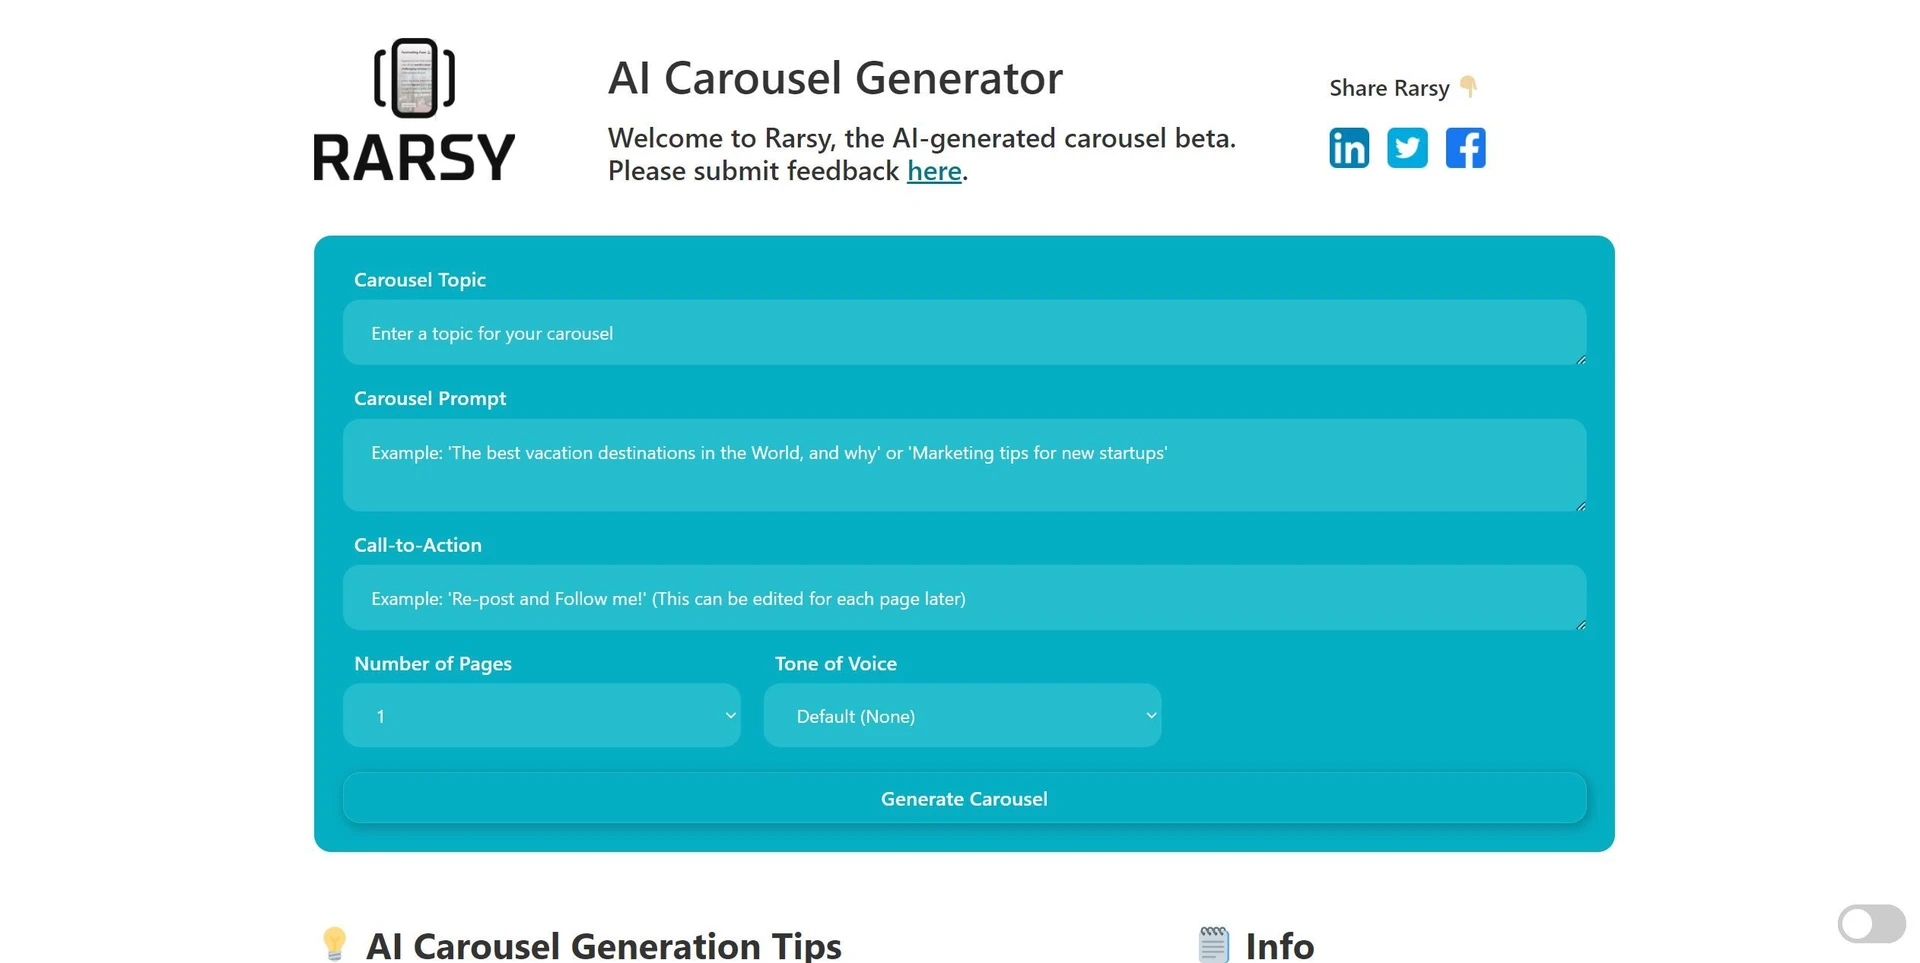 Carousel Generatorwebsite picture